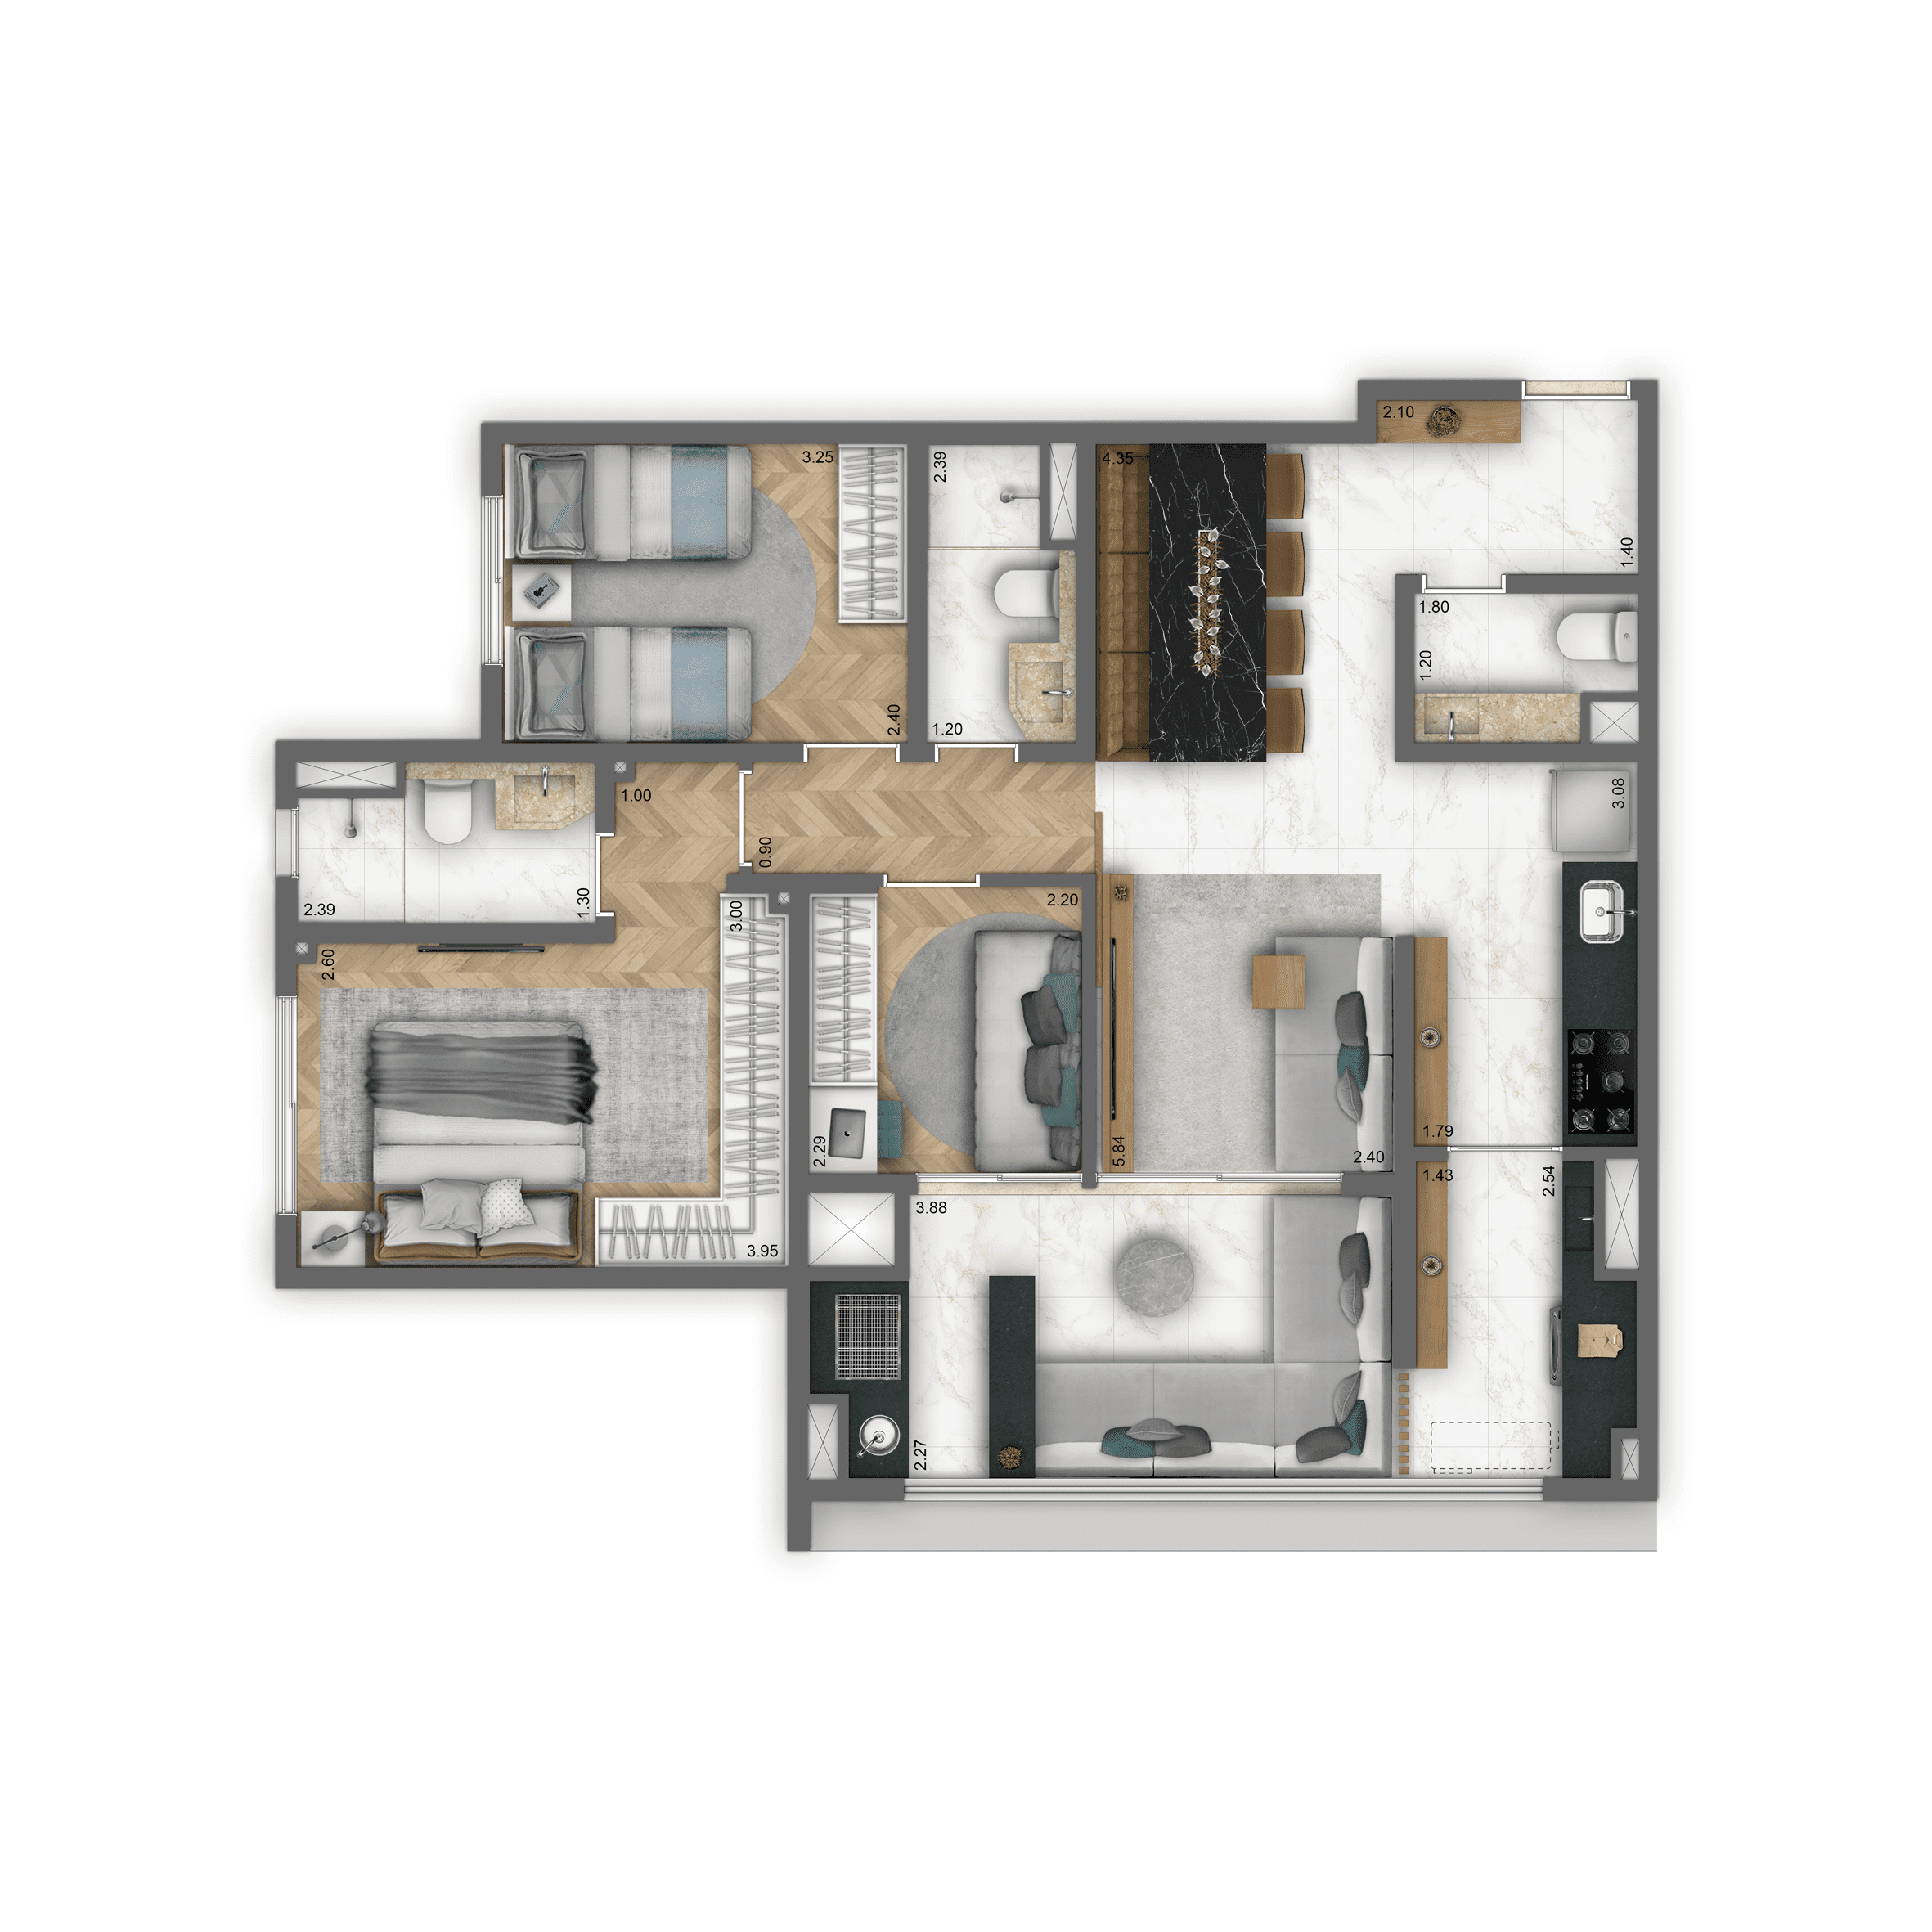 Planta-tipo 82 m² | 3 dorms. (1 suíte)